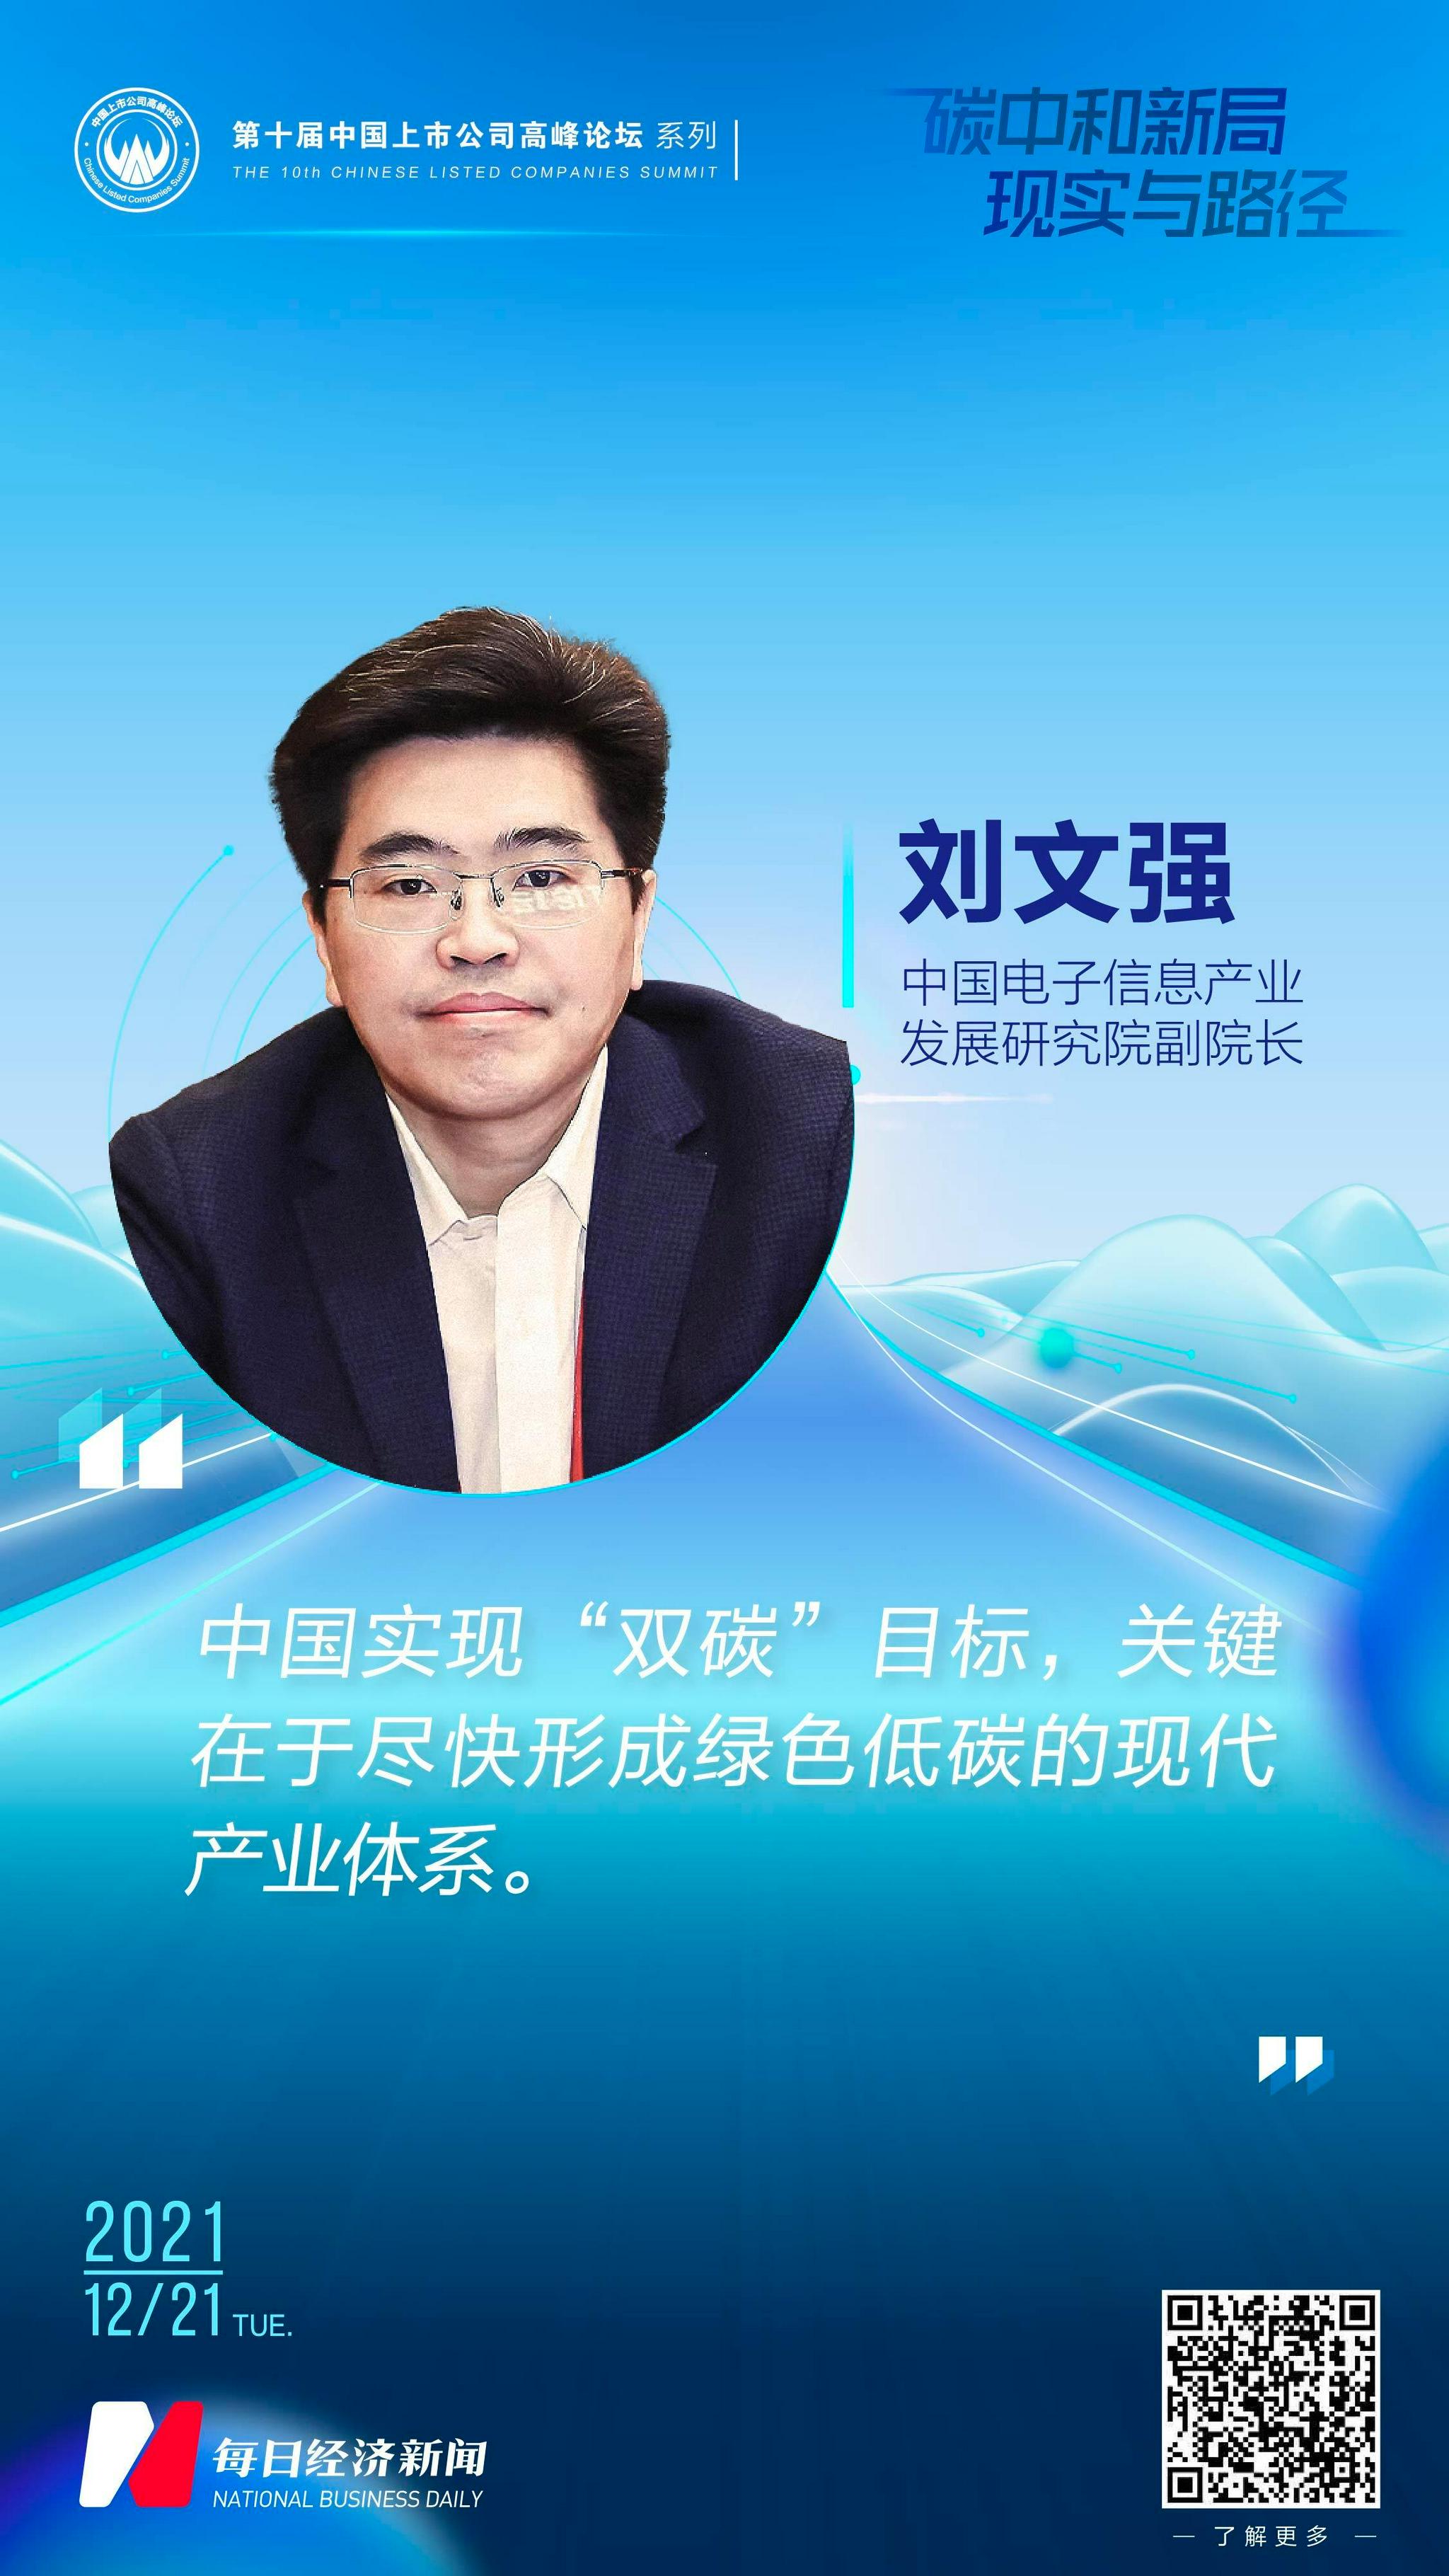 中国电子信息产业发展研究院副院长刘文强实现双碳目标关键在于尽快